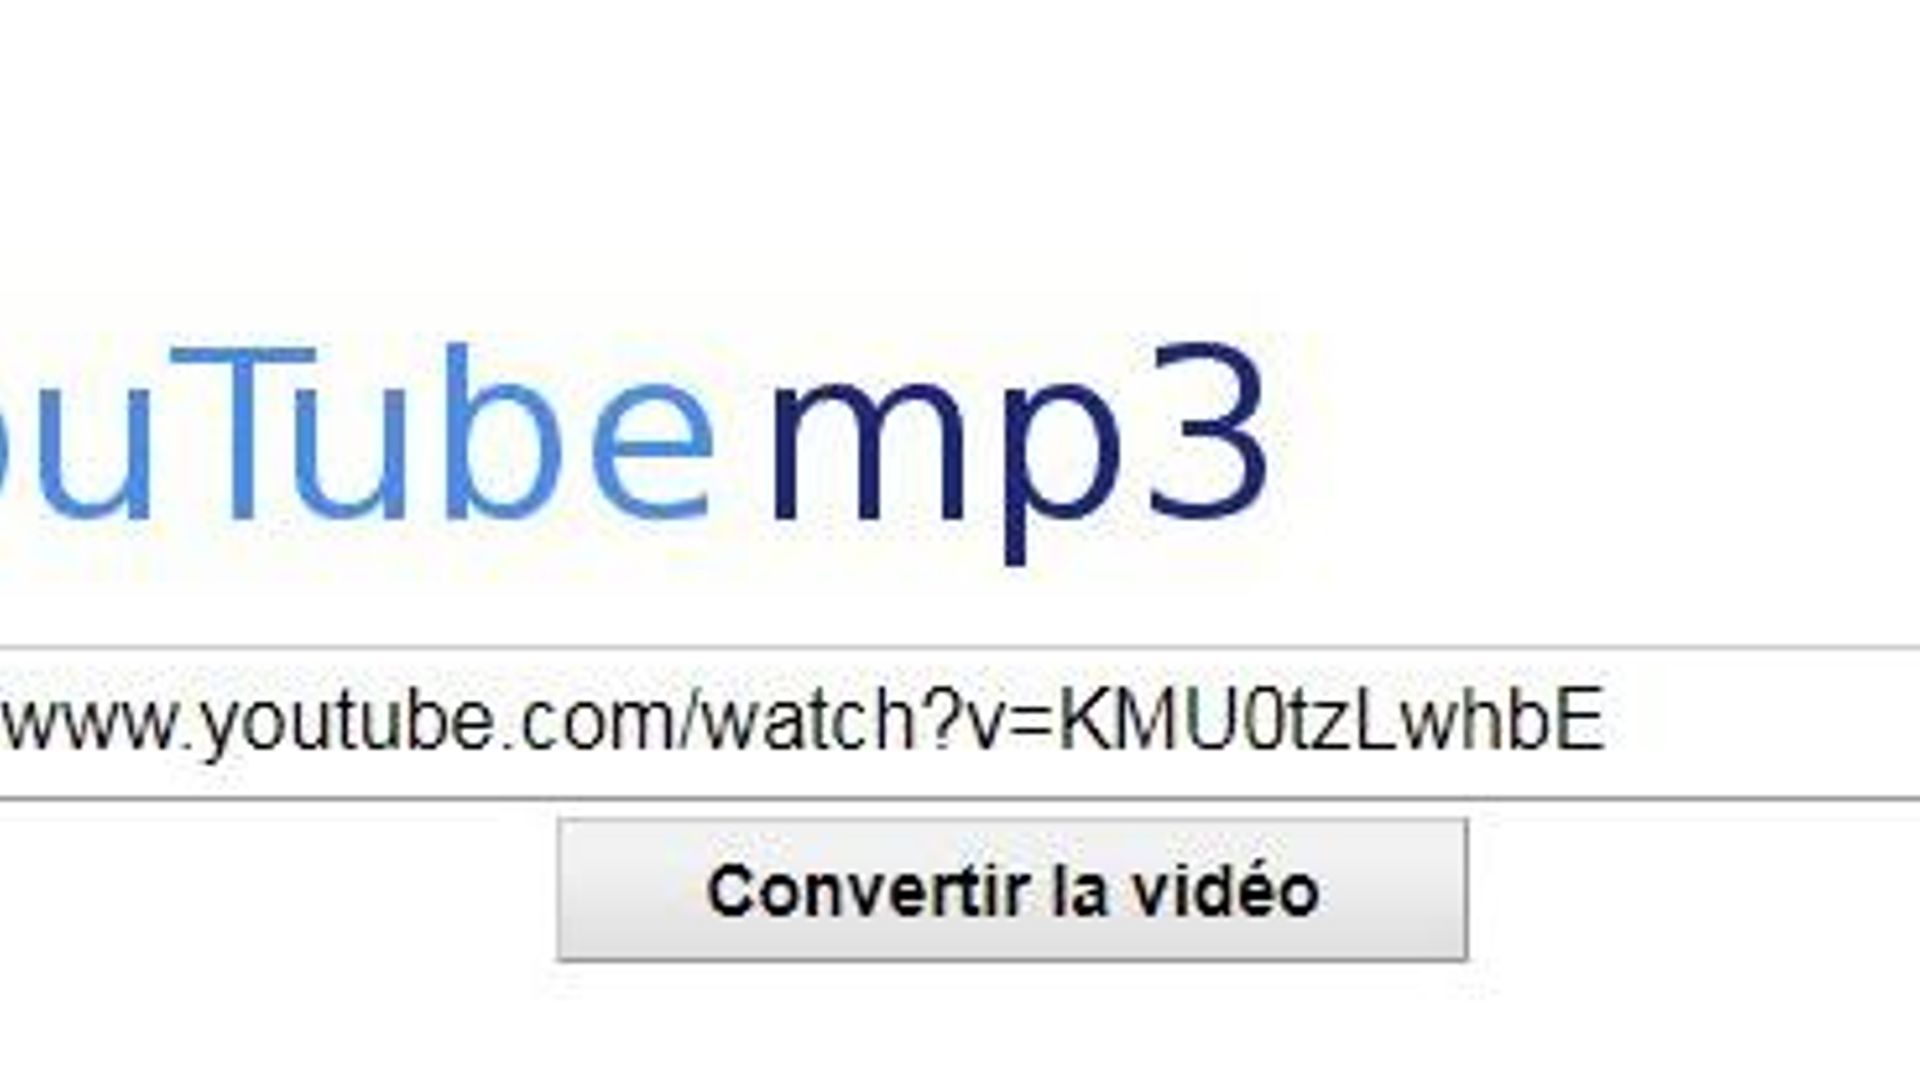 defect supermarkt Deskundige Youtube-MP3, c'est fini: télécharger de la musique sur Youtube va devenir  plus difficile - rtbf.be